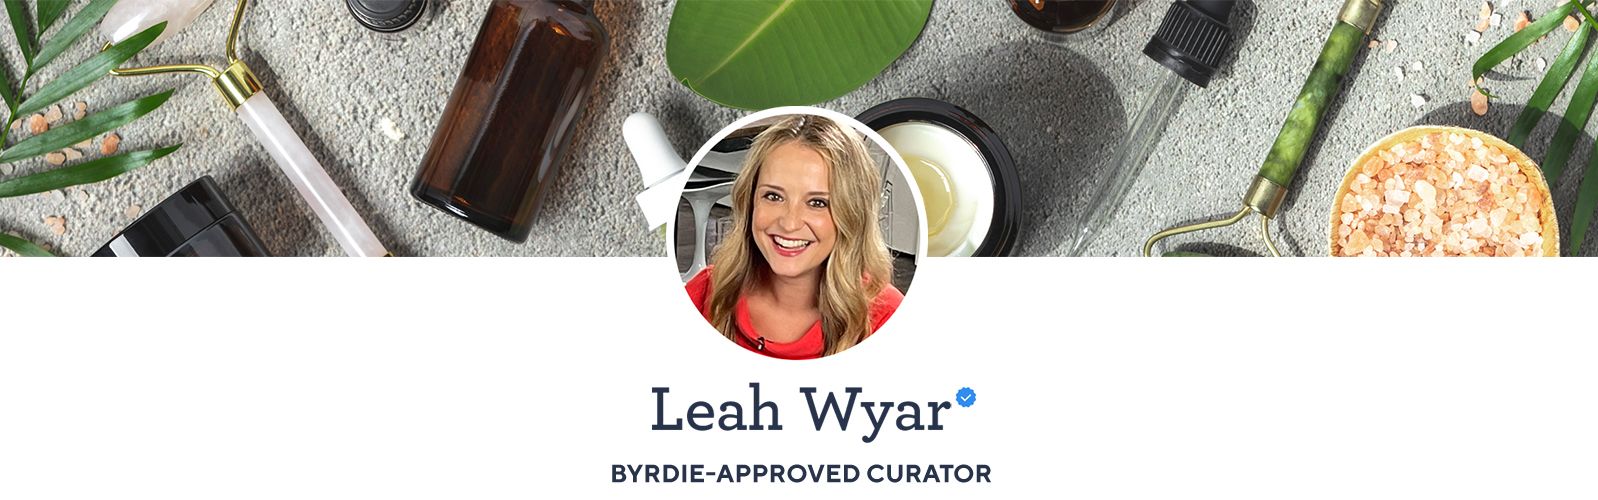 Leah Wyar - Byrdie-Approved Curator